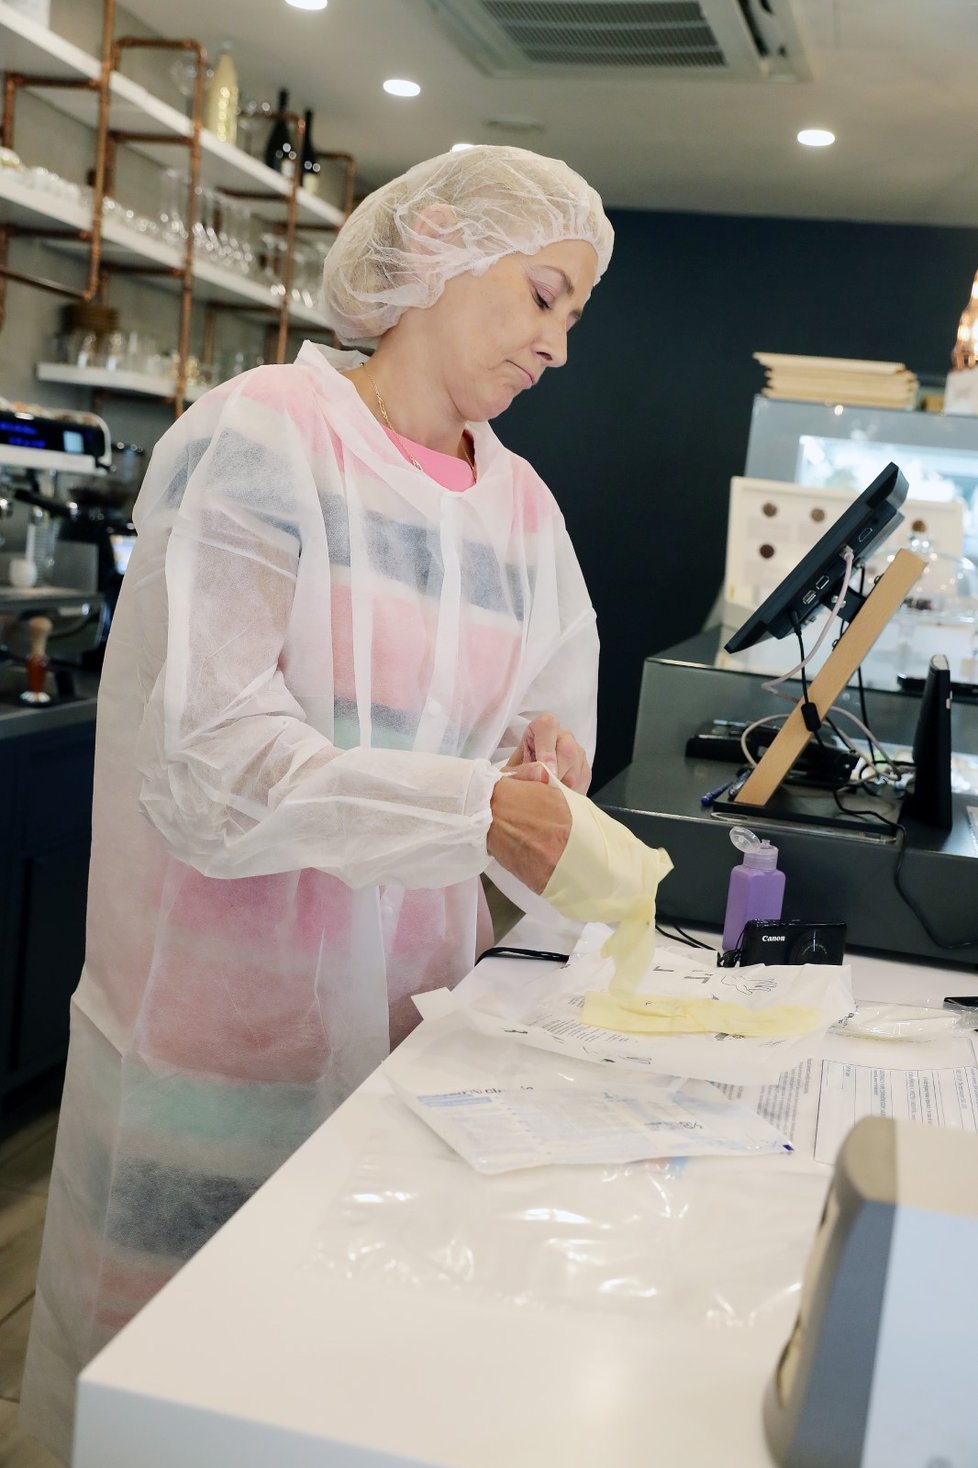 Inspektoři SZPI odebrali vzorky zmrzliny a ledu v cukrárně v centru Prahy. Výsledky testů jsou dlouhodobě neuspokojivé